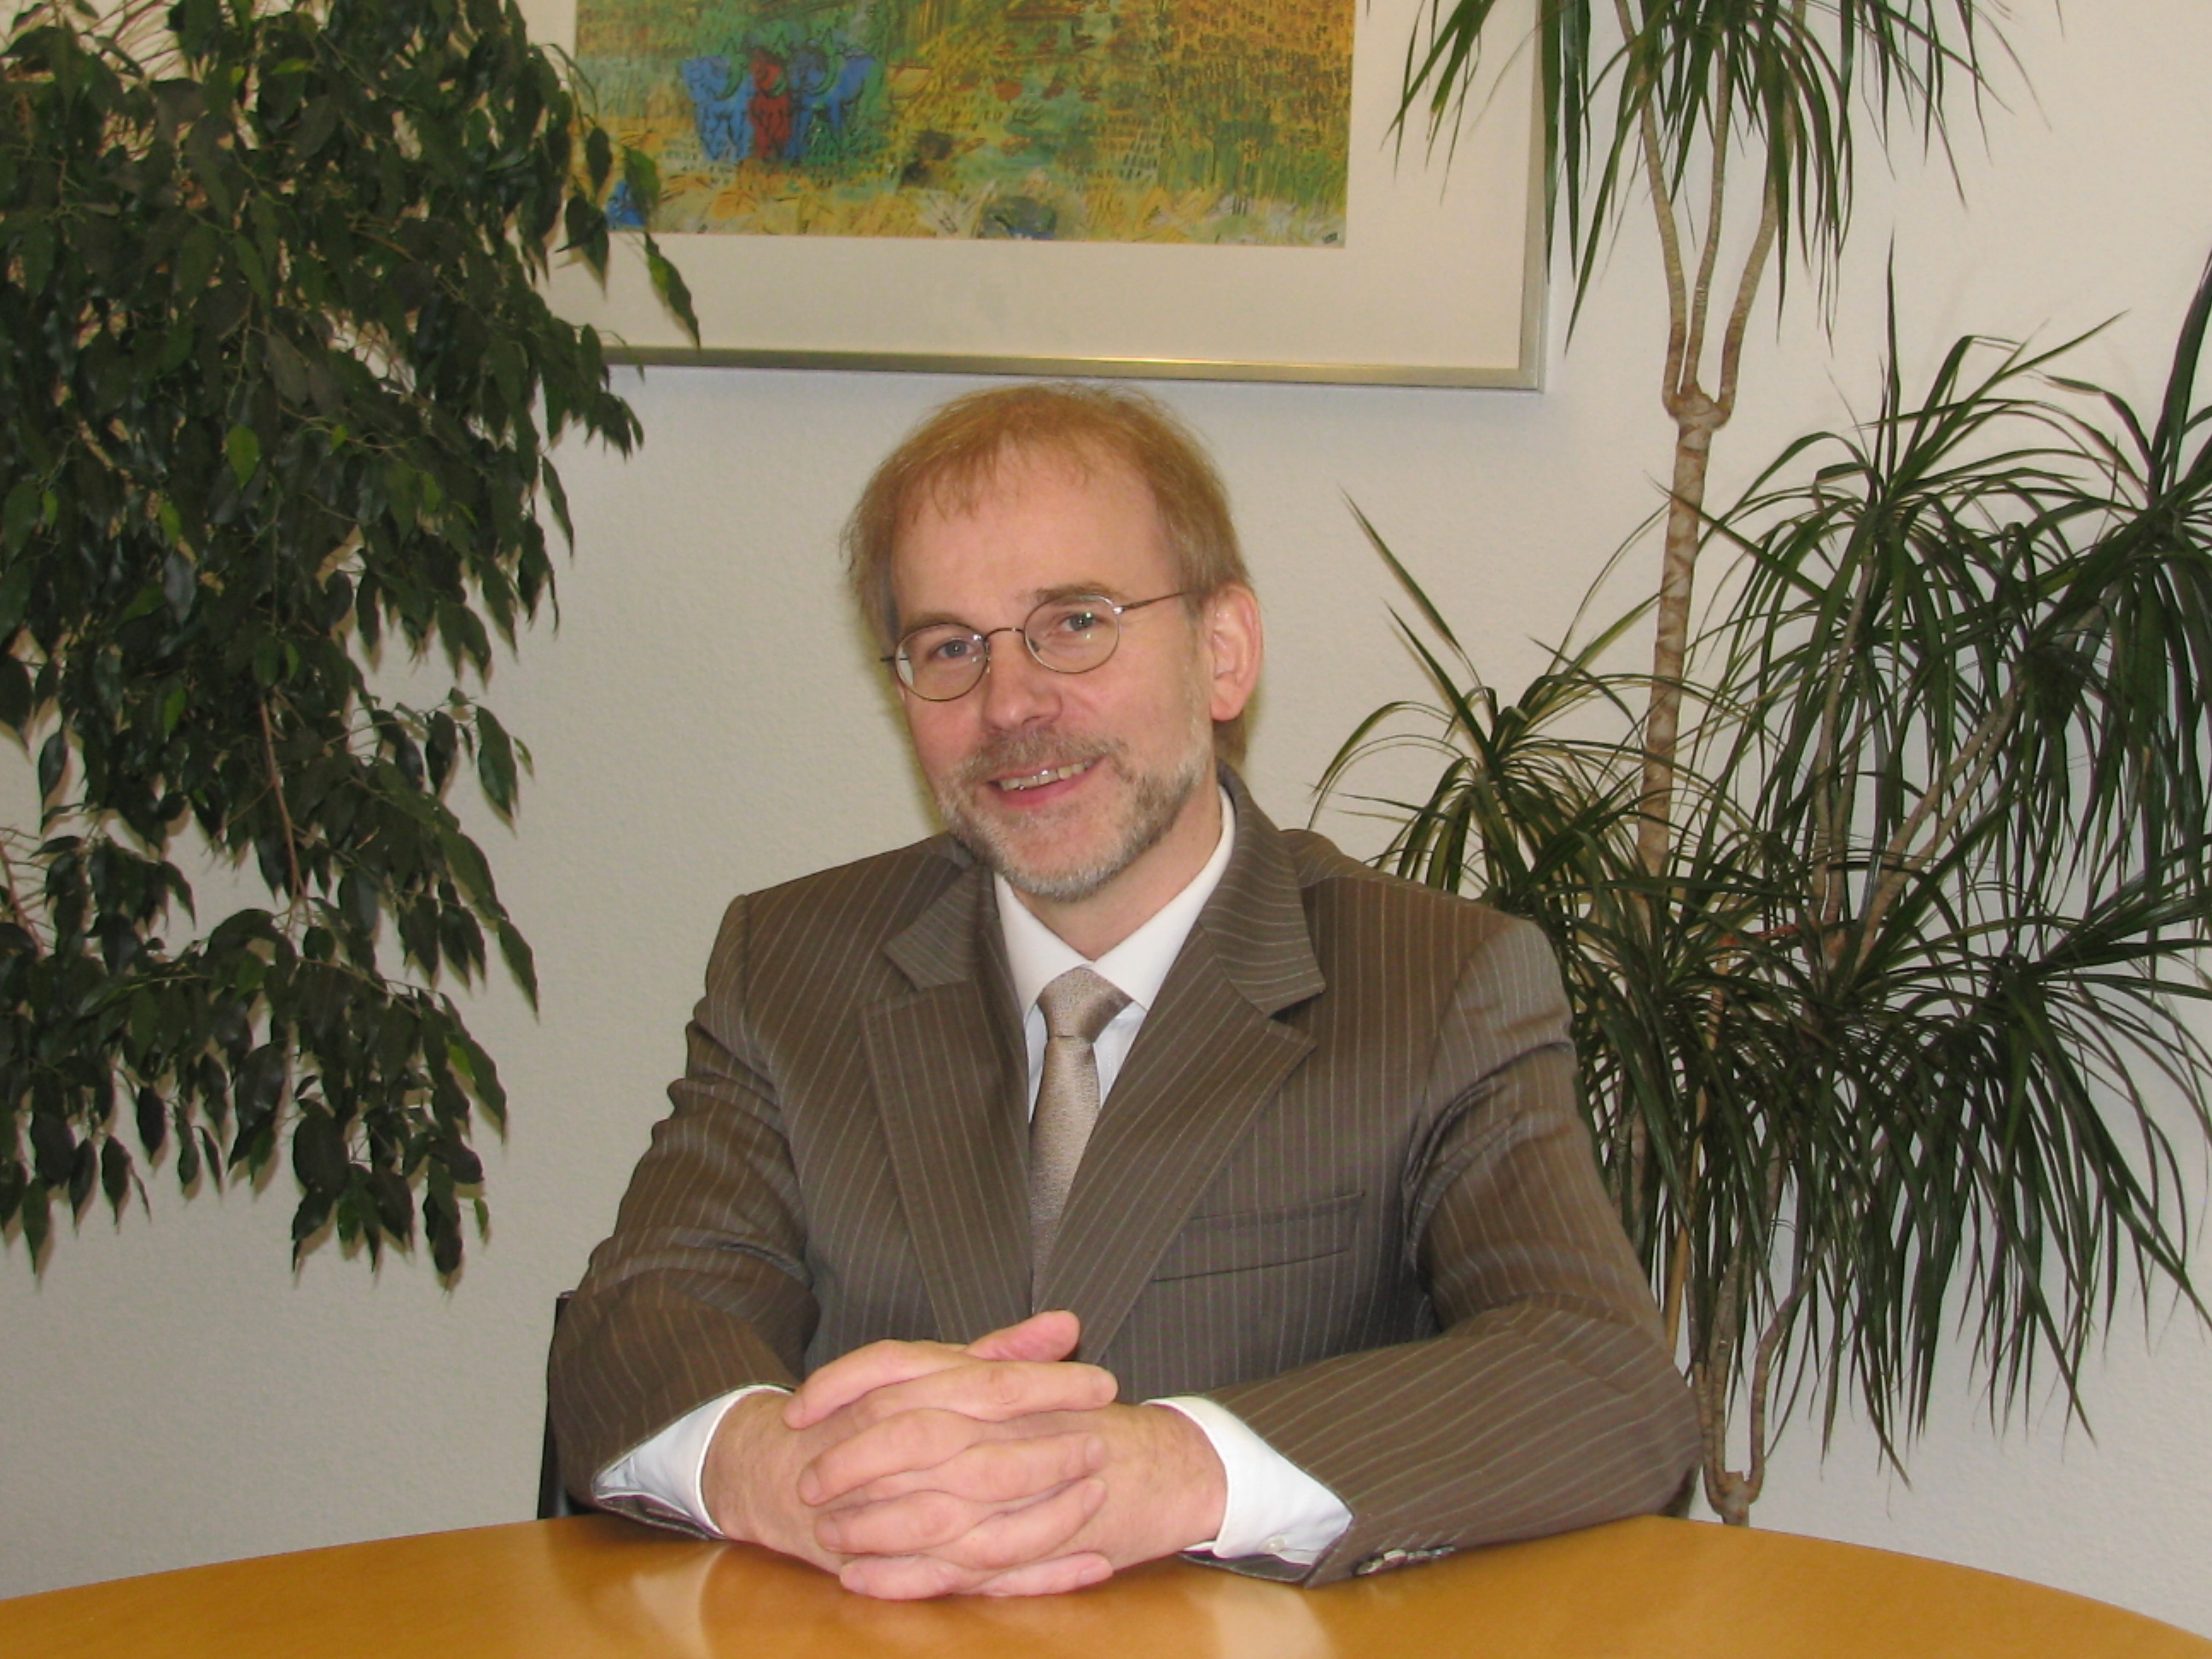 Dr. Michael Hantschel Wirtschaftsprüfer und Steuerberater, Martin-Schmeißer-Weg 14 in Dortmund